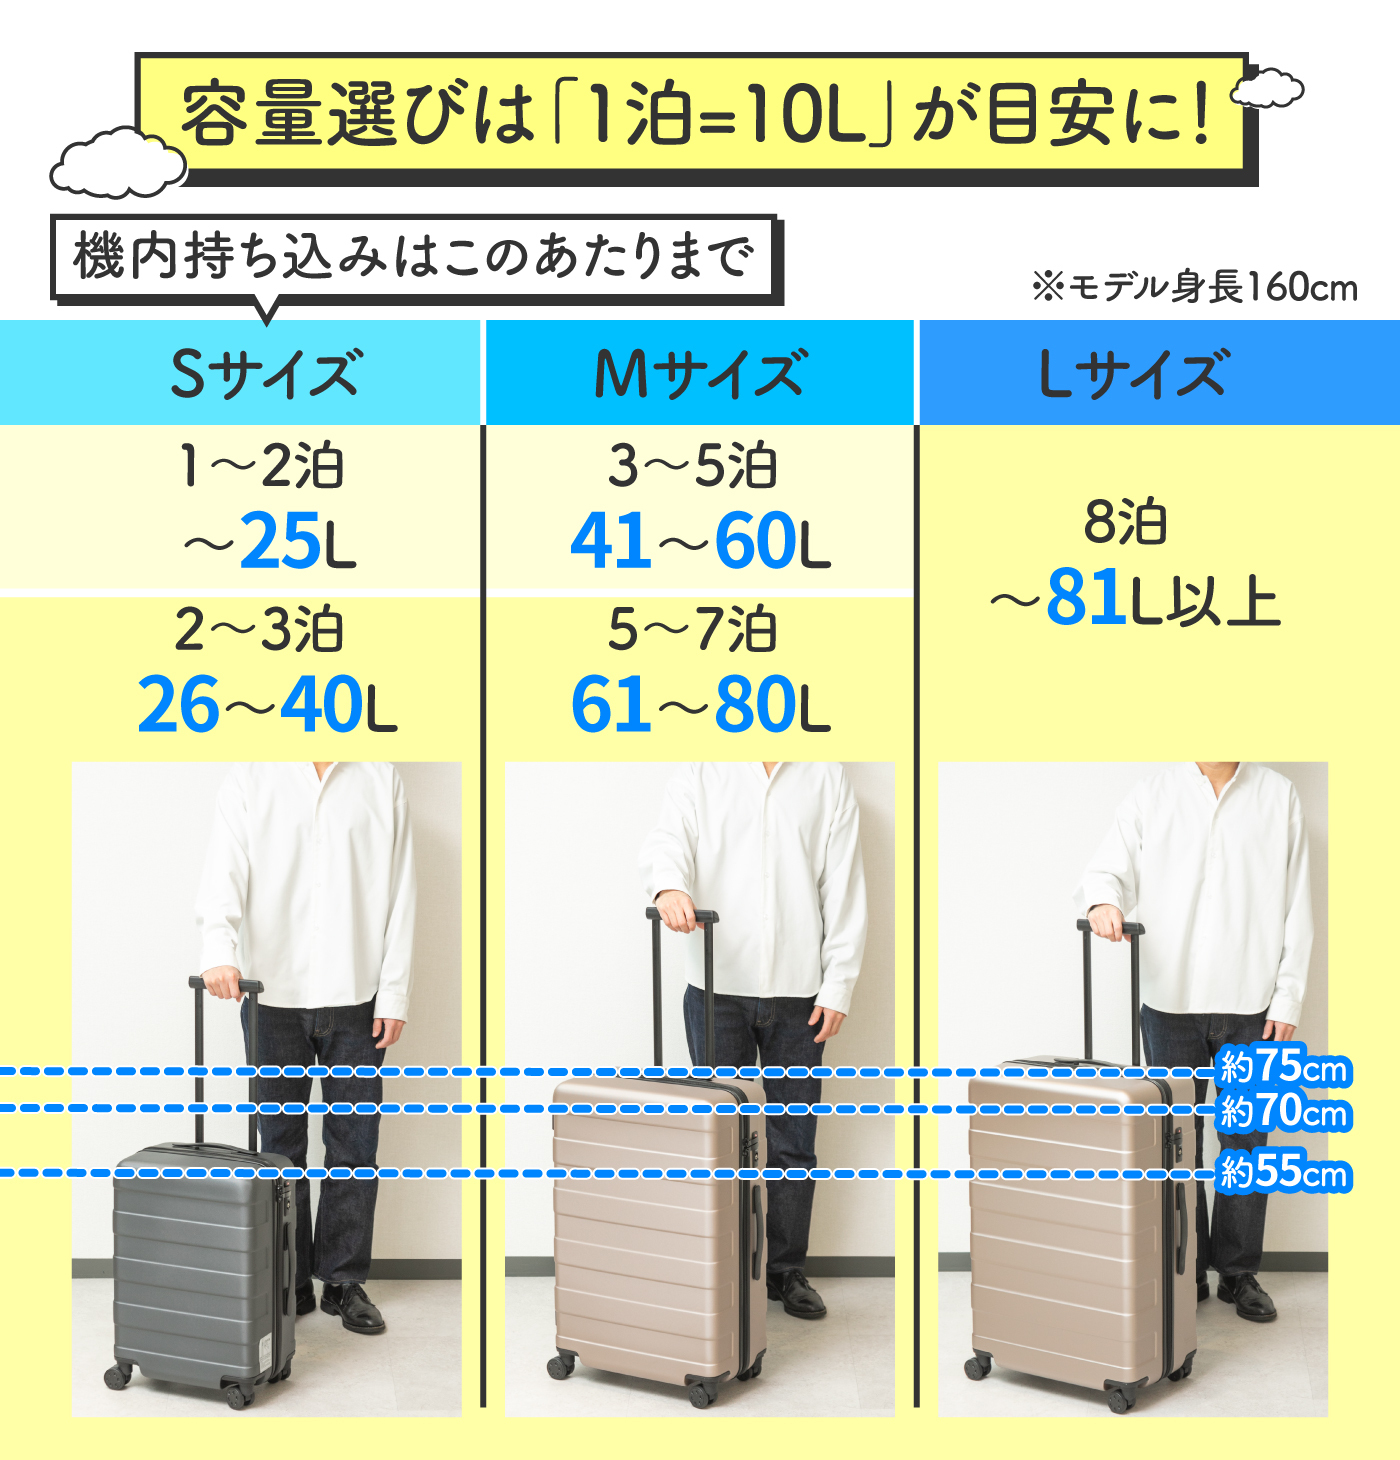 大切な 軽量スーツケースL 伸縮ハンドル２段階イエロー